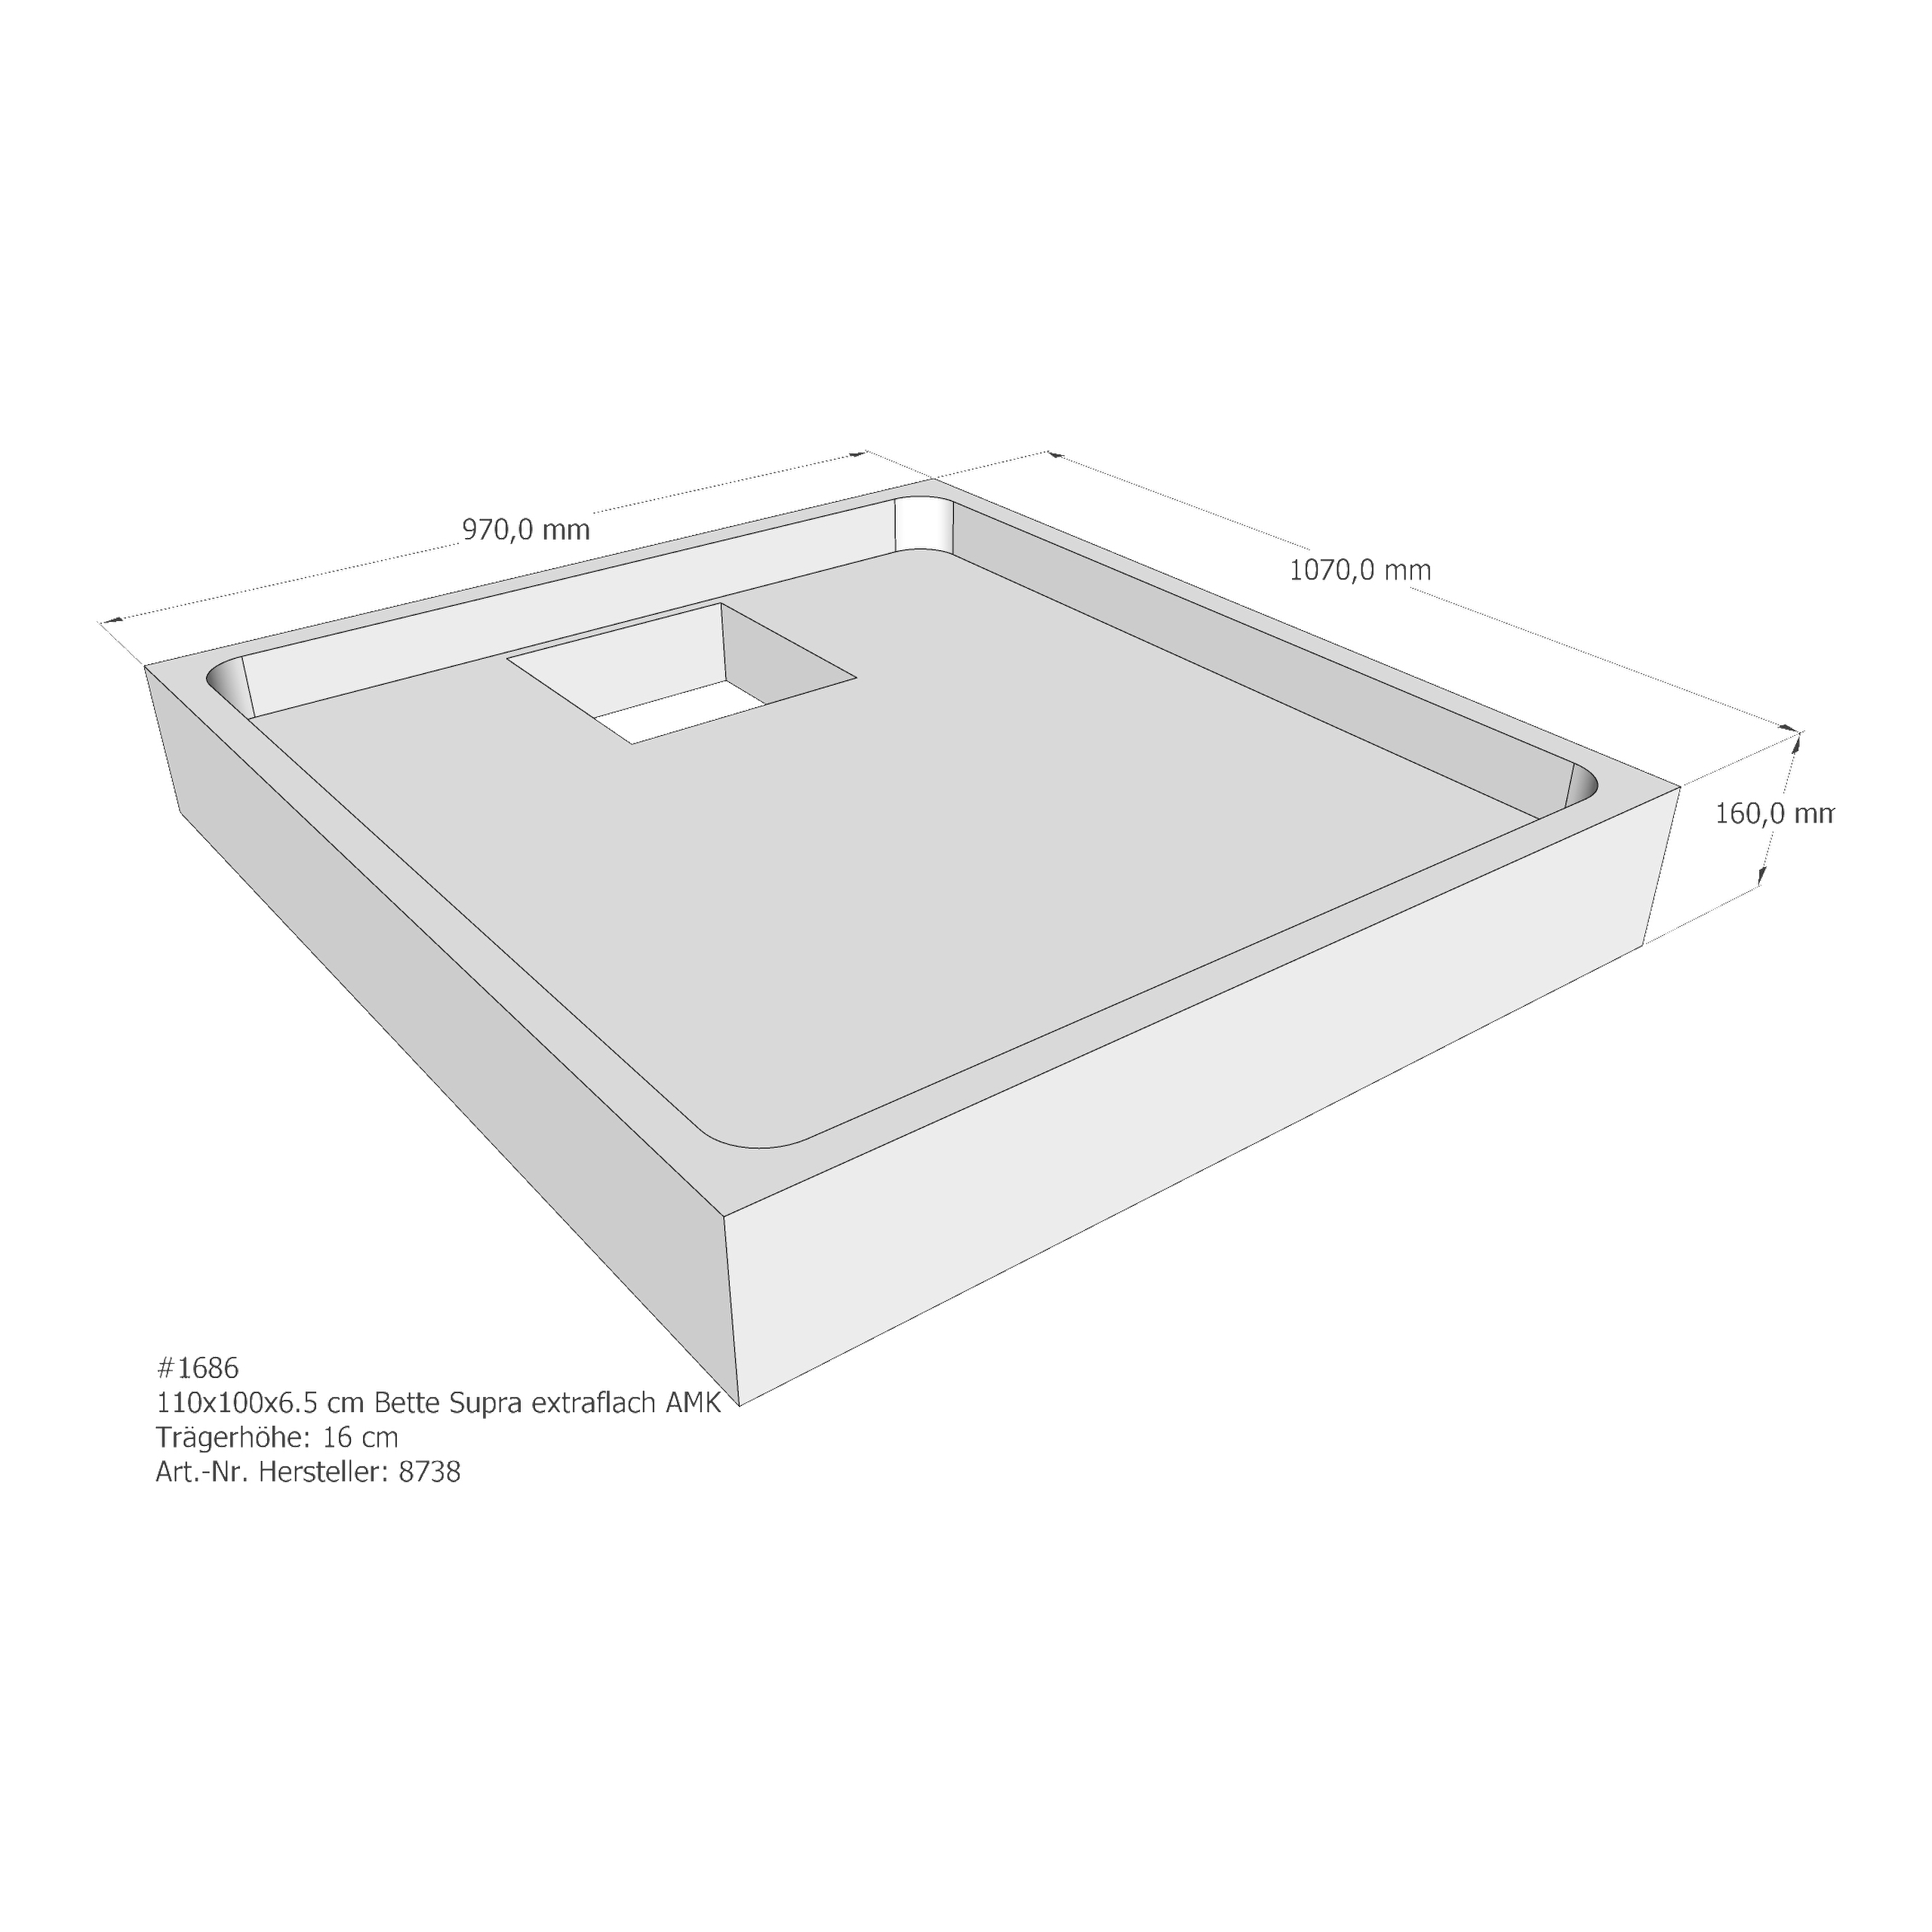 Duschwannenträger für Bette BetteSupra (extraflach) 110 × 100 × 6,5 cm